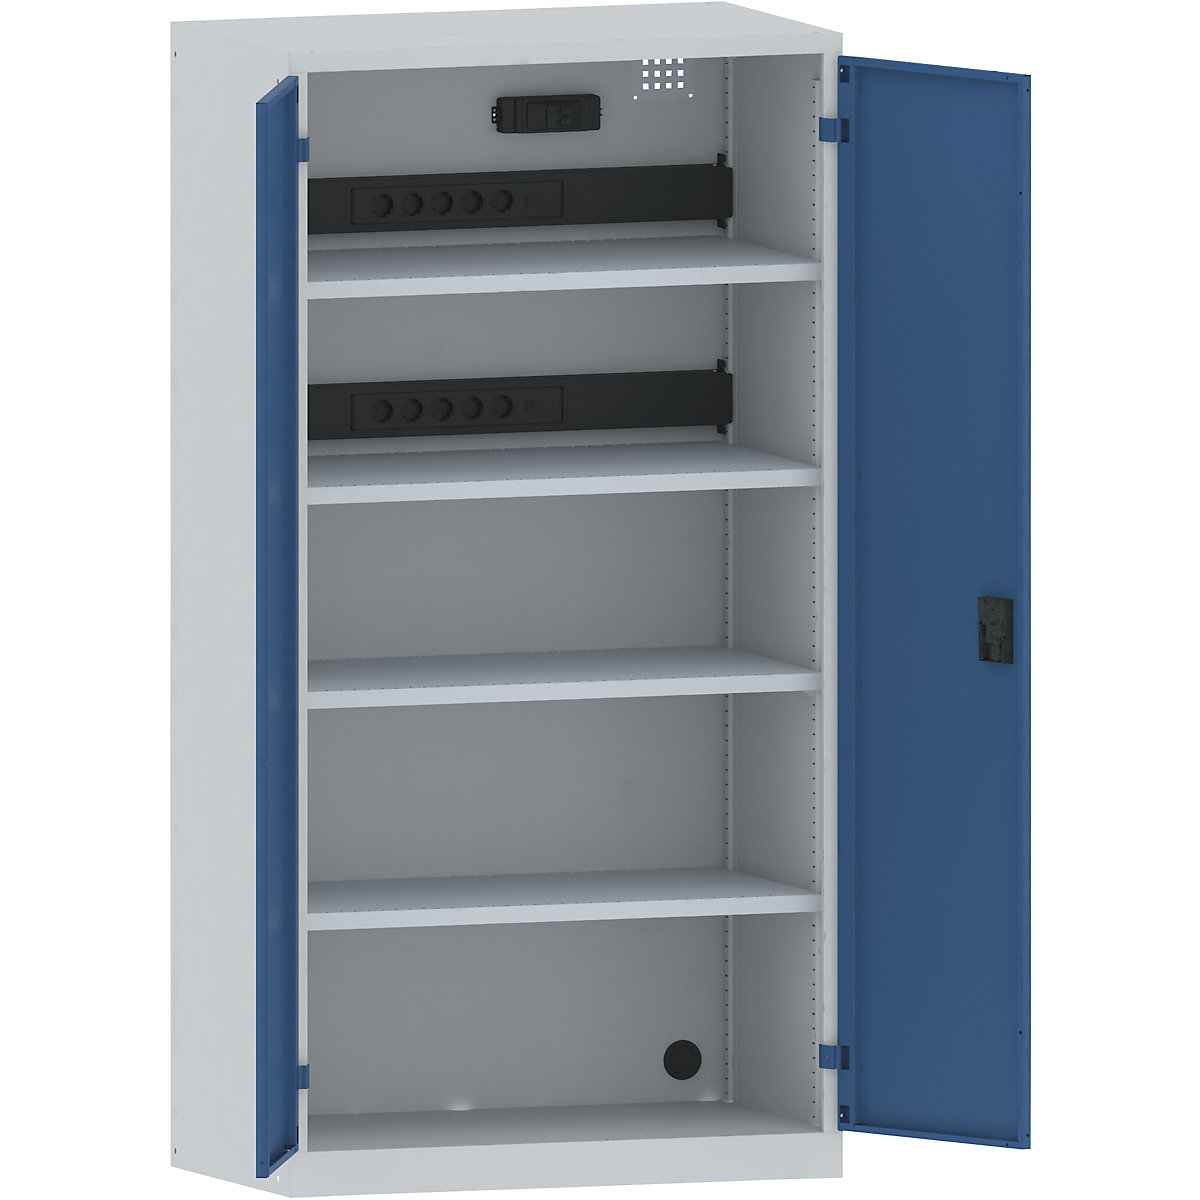 Omara za polnjenje akumulatorjev – LISTA, 4 police, vrata iz polne pločevine, 2 letvi za napeljavo na zadnji strani, s stikalom FI/LS, sive / modre barve-7